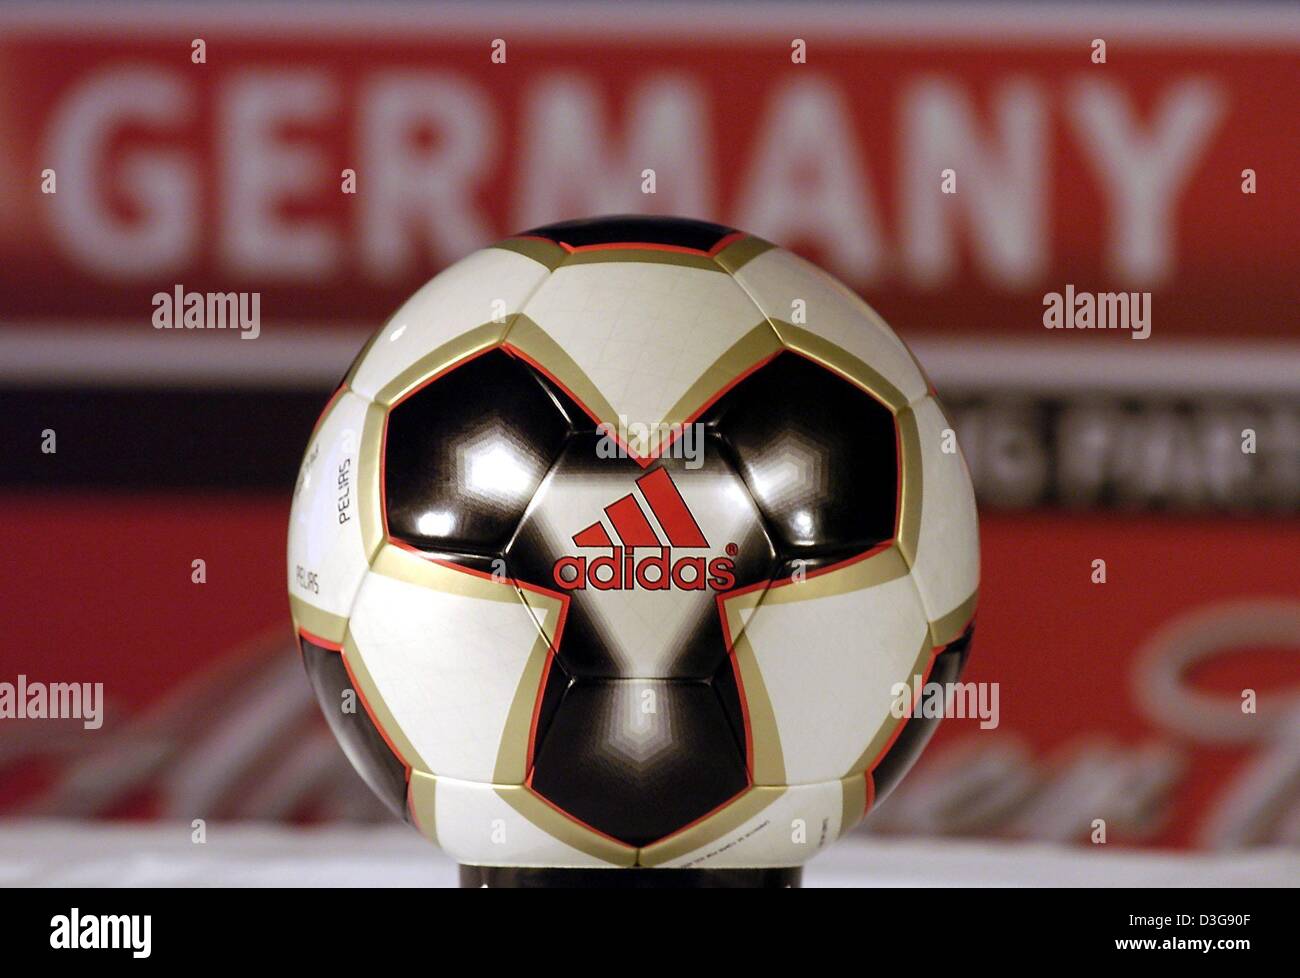 Afp) - Le ballon officiel de la Coupe des Confédérations est présenté à la  cérémonie du concours tournoi de Francfort, Allemagne, 1 novembre 2004. La  balle, produite par adidas, sera utilisé lors